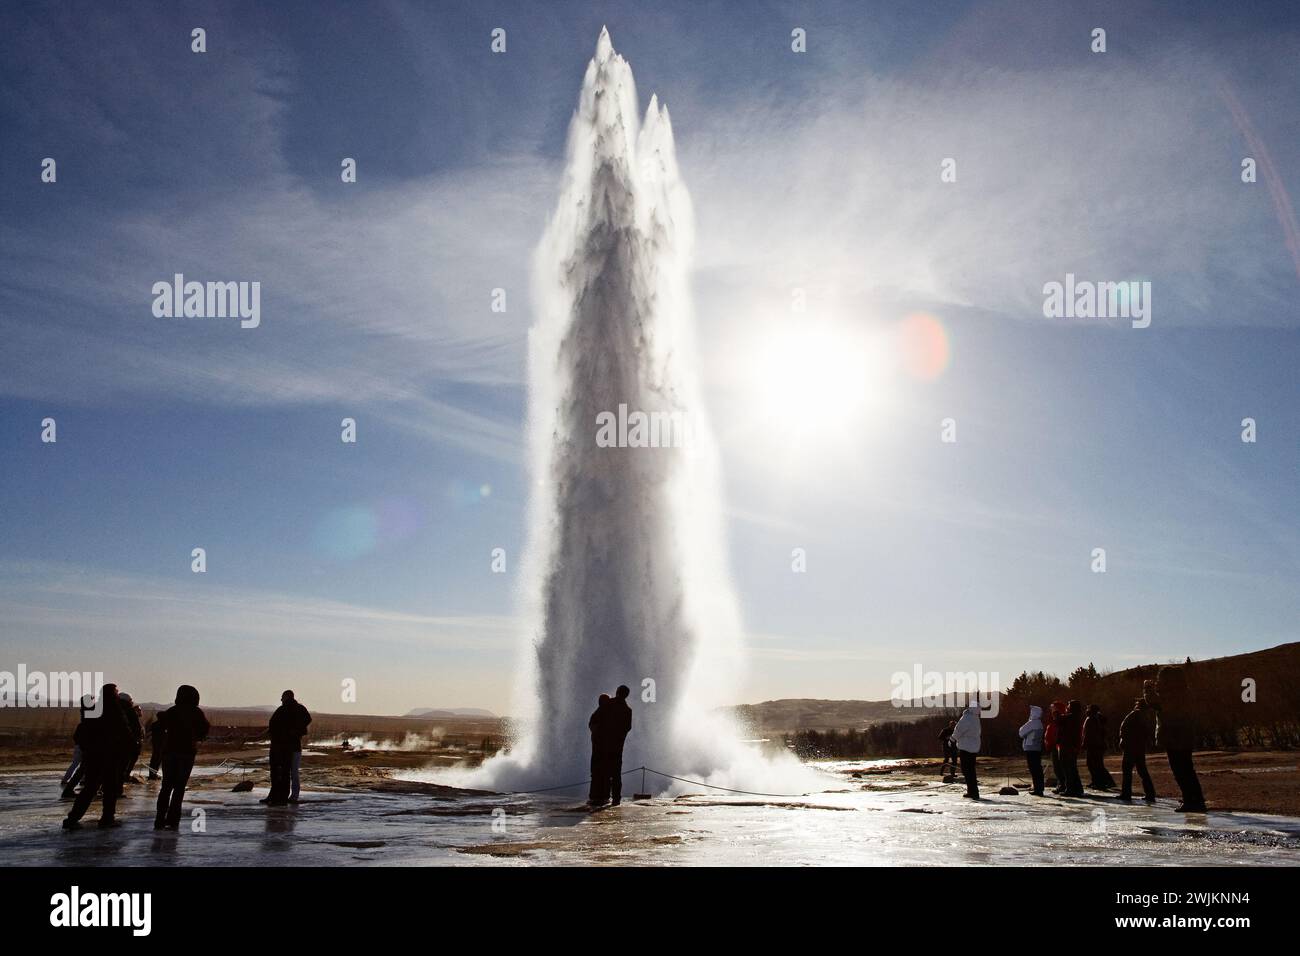 Un geyser dans un champ avec des gens debout autour Banque D'Images